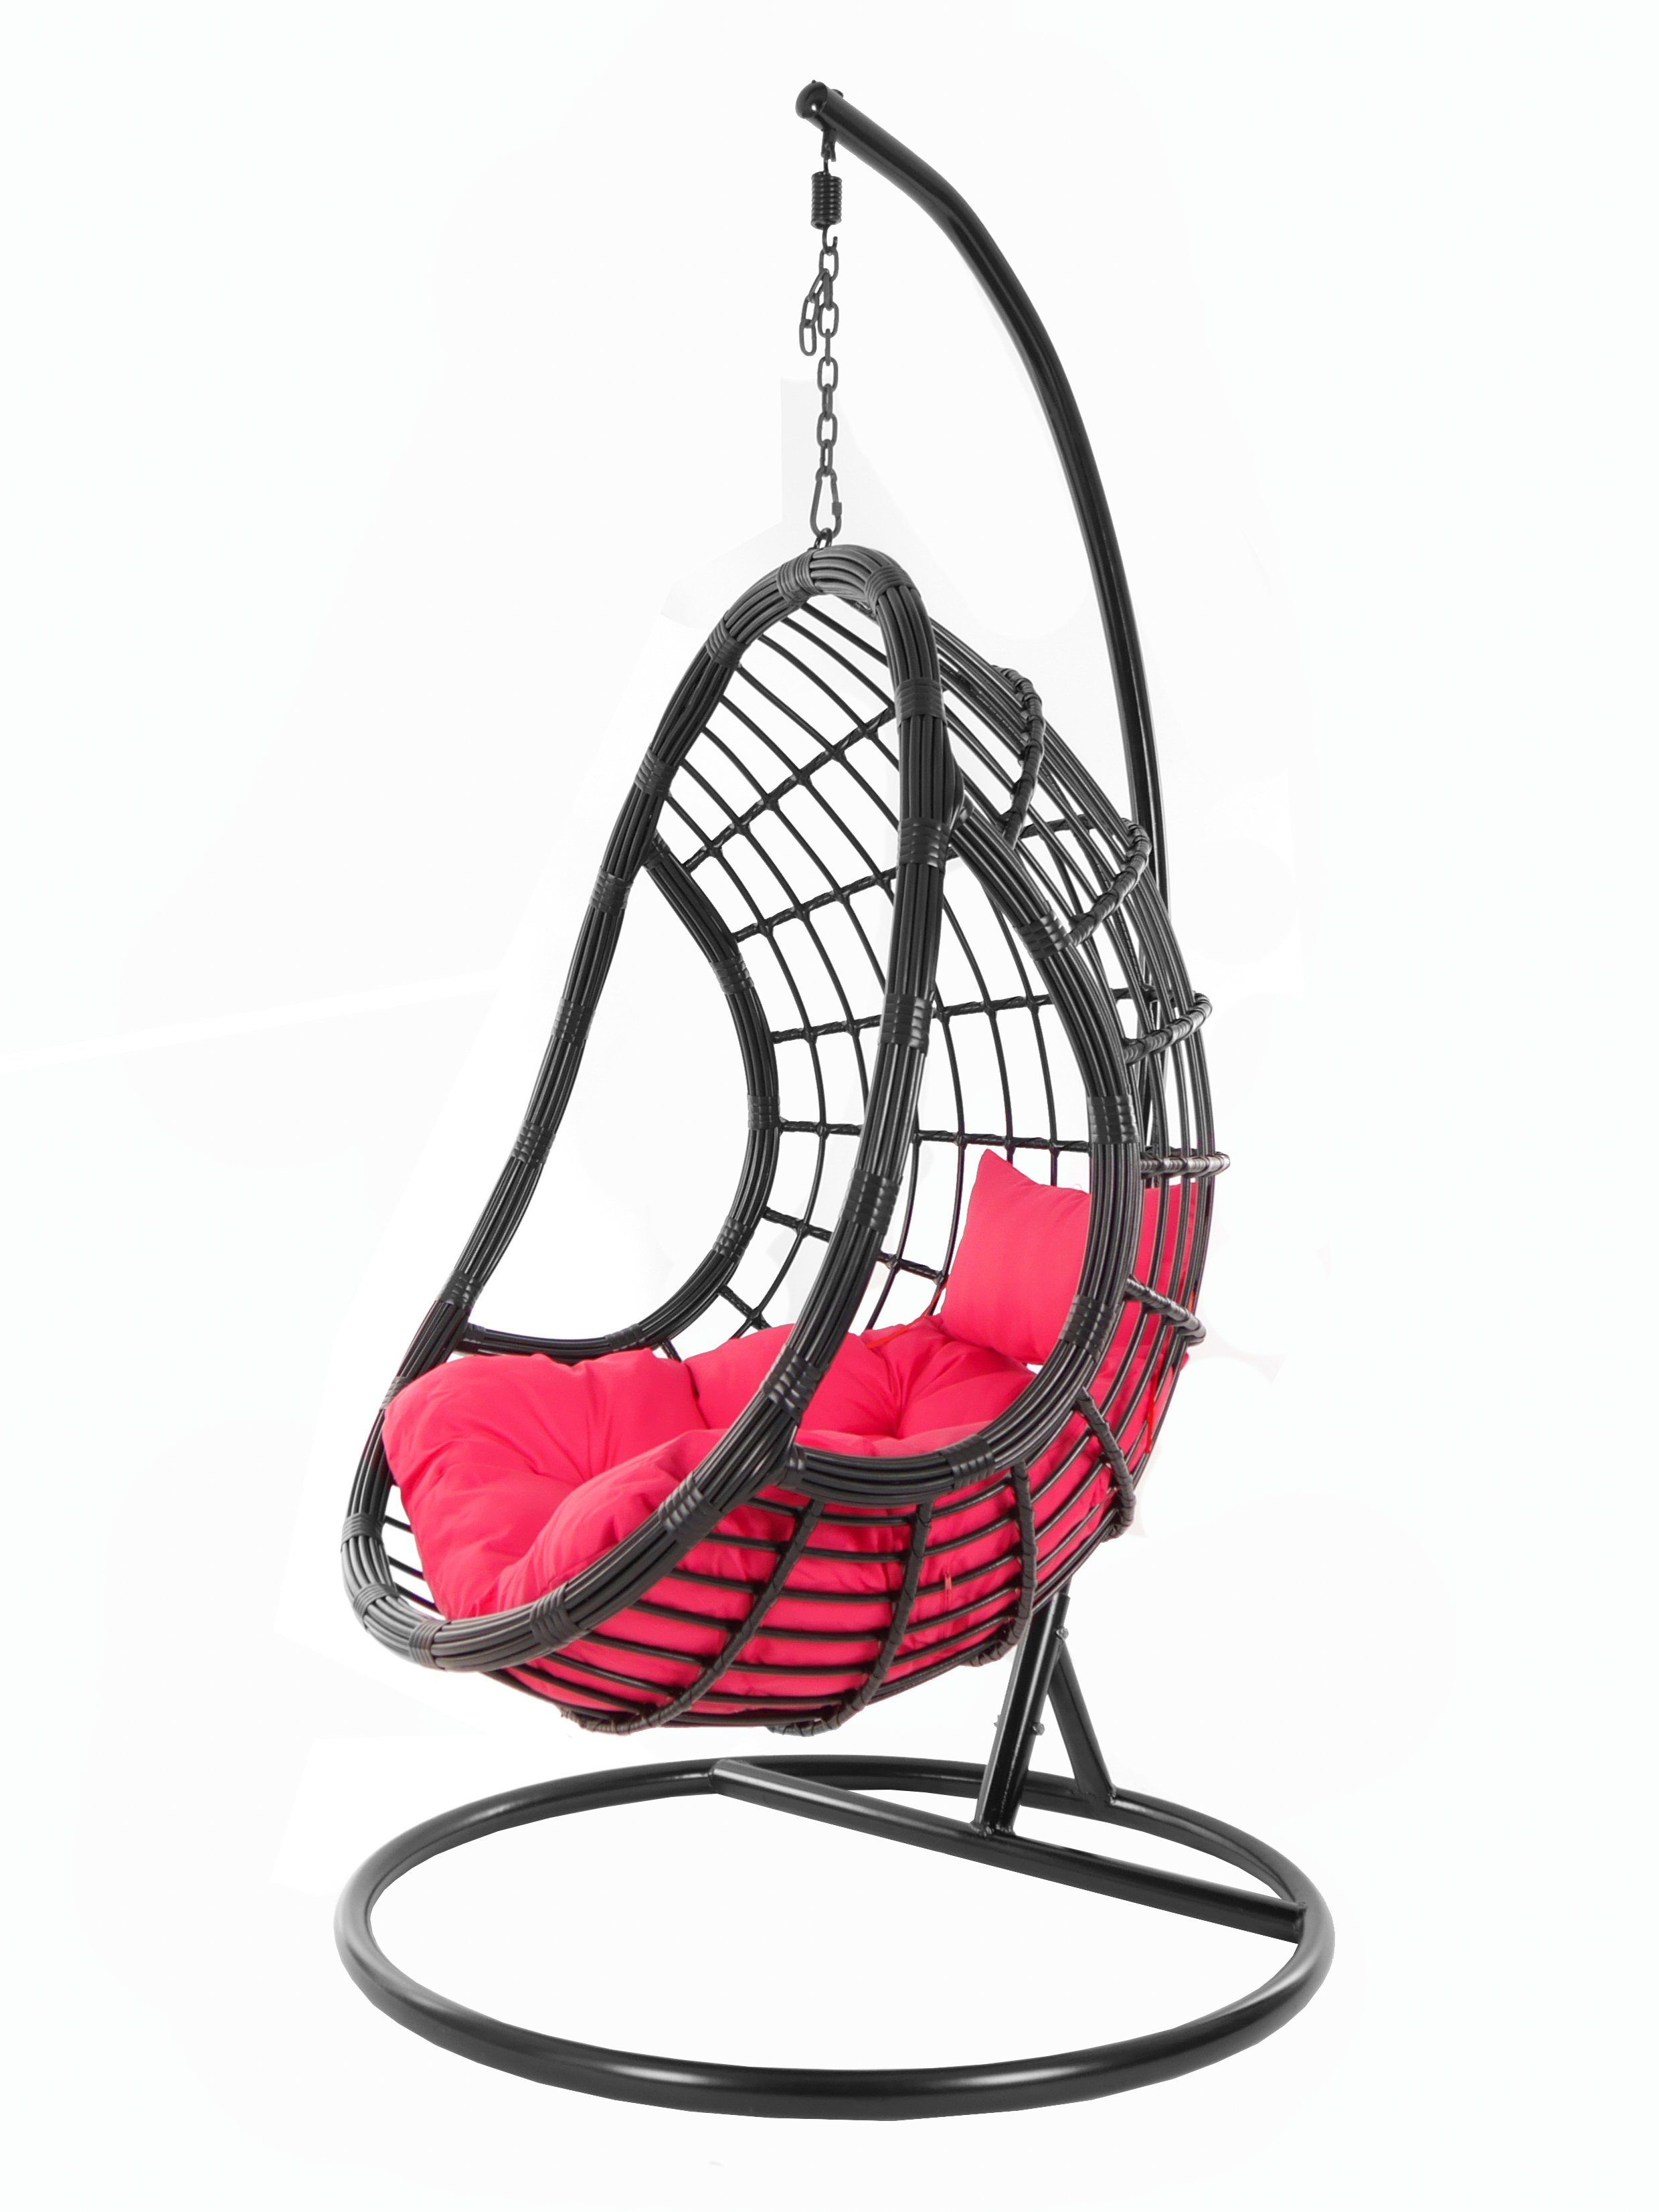 KIDEO Hängesessel PALMANOVA black, Swing Loungemöbel, schwarz, mit edles (3333 Chair, Kissen, Schwebesessel, pink) und hot Design Hängesessel Gestell pink